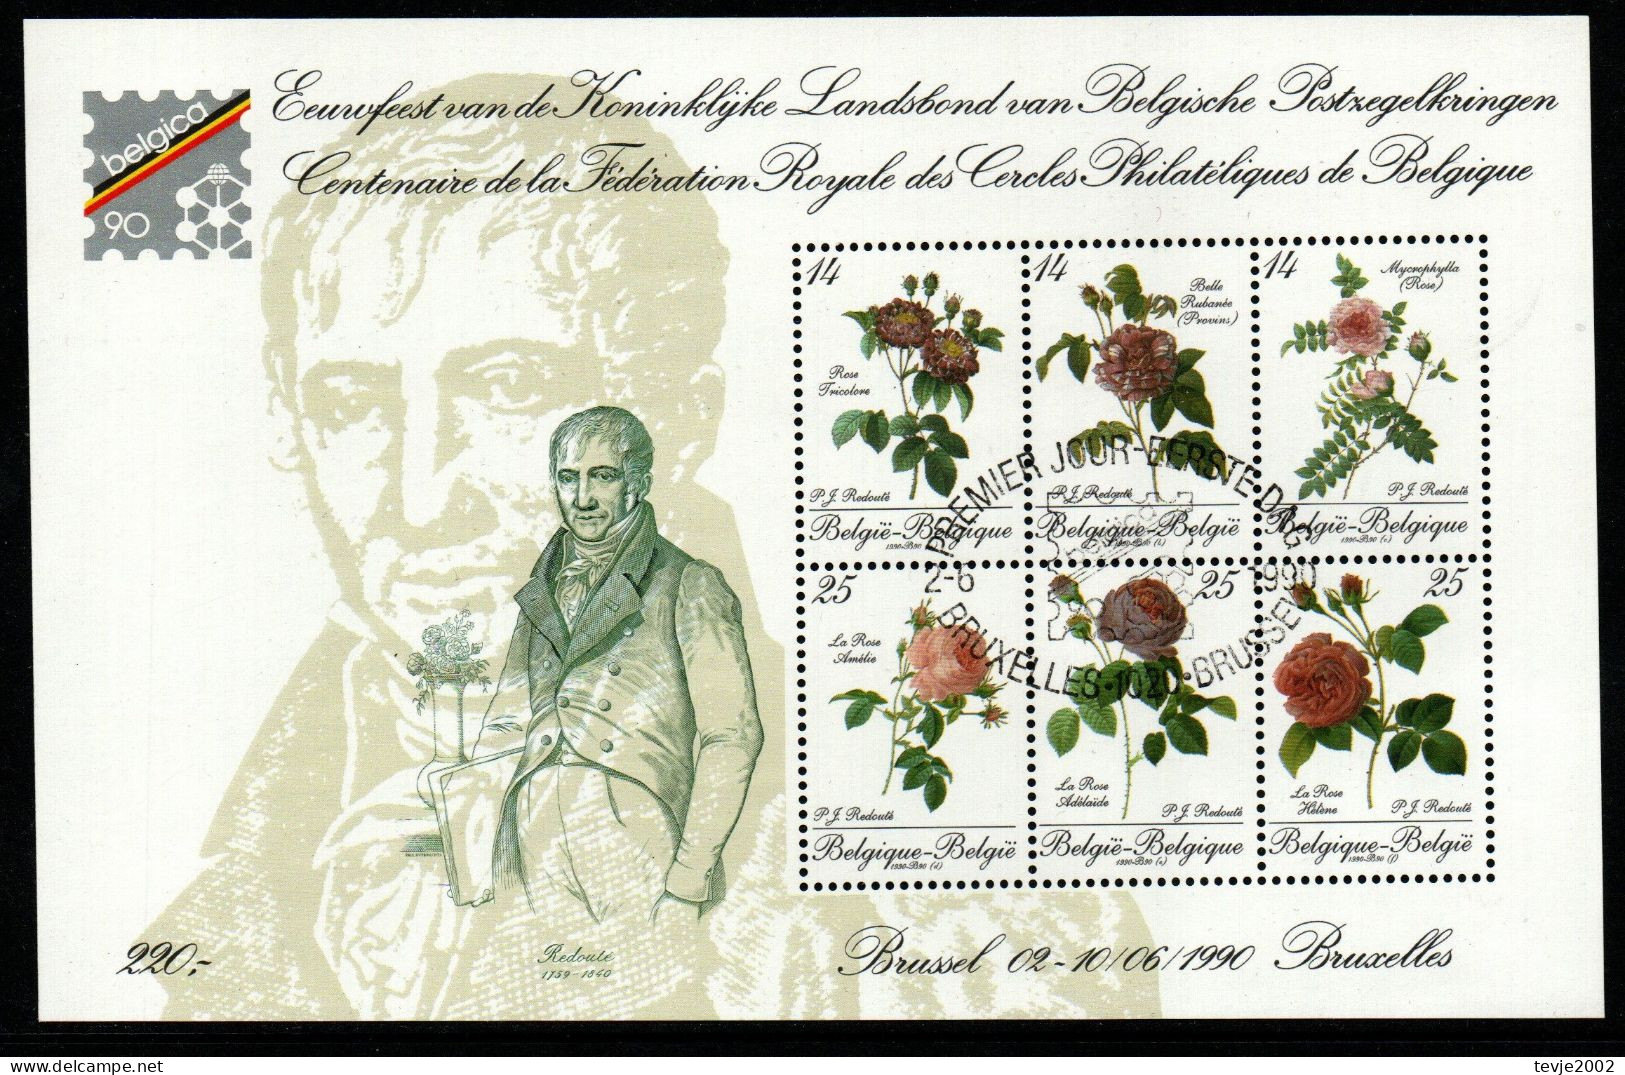 Belgien 1990 - Mi.Nr. Block 61 - Gestempelt Used - Blumen Flowers Rosen Flowers - Rosen